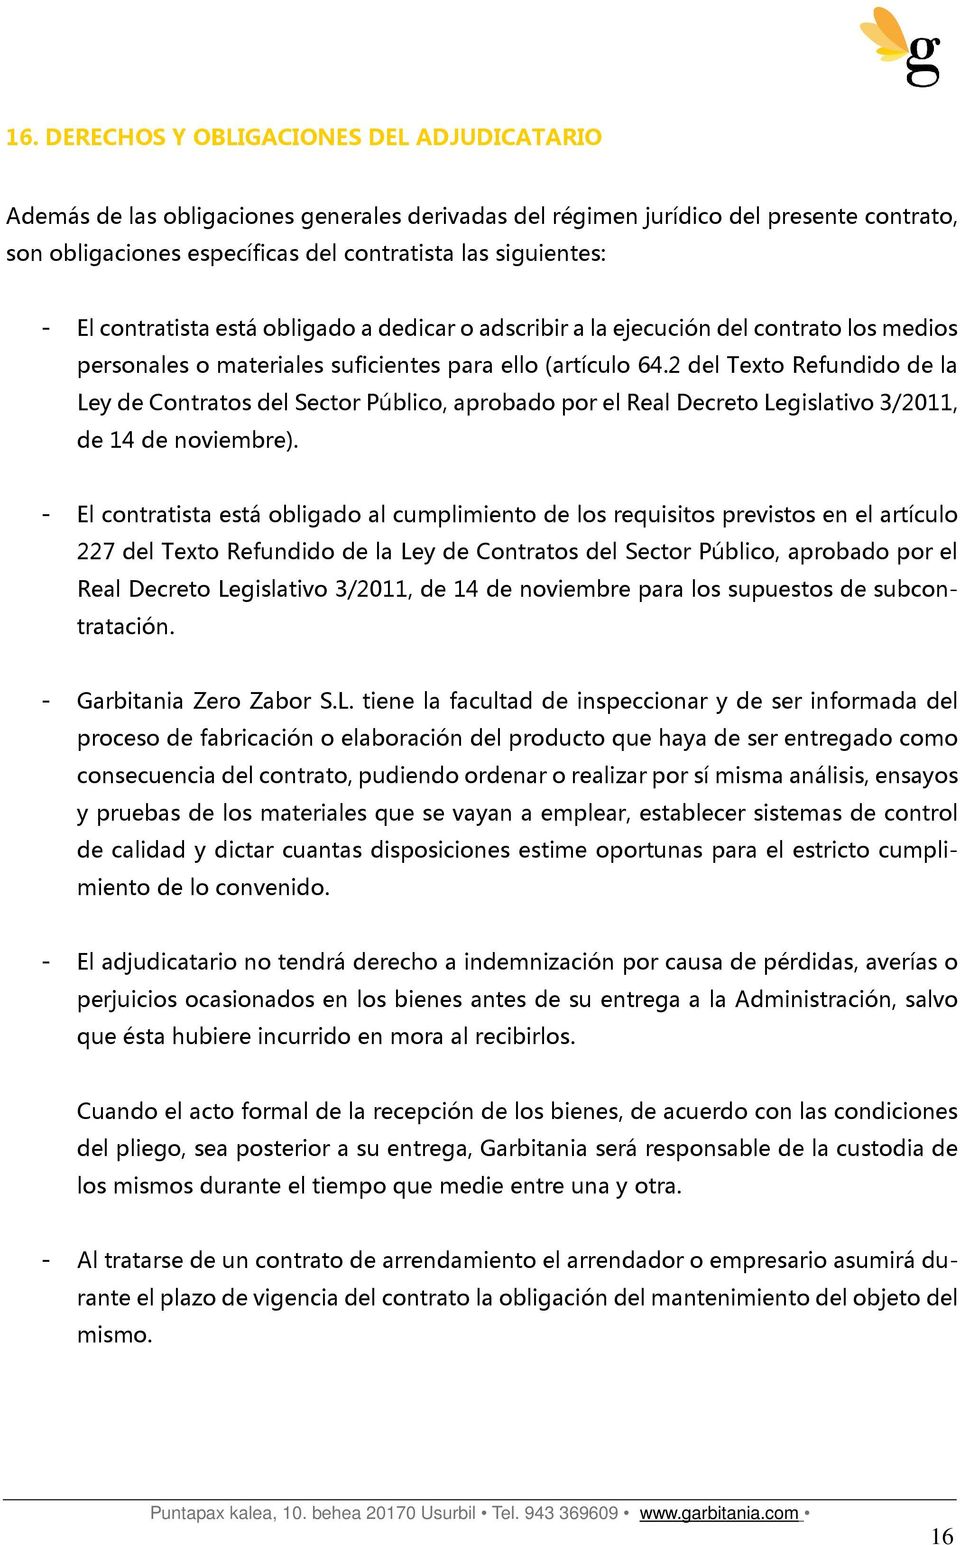 2 del Texto Refundido de la Ley de Contratos del Sector Público, aprobado por el Real Decreto Legislativo 3/2011, de 14 de noviembre).